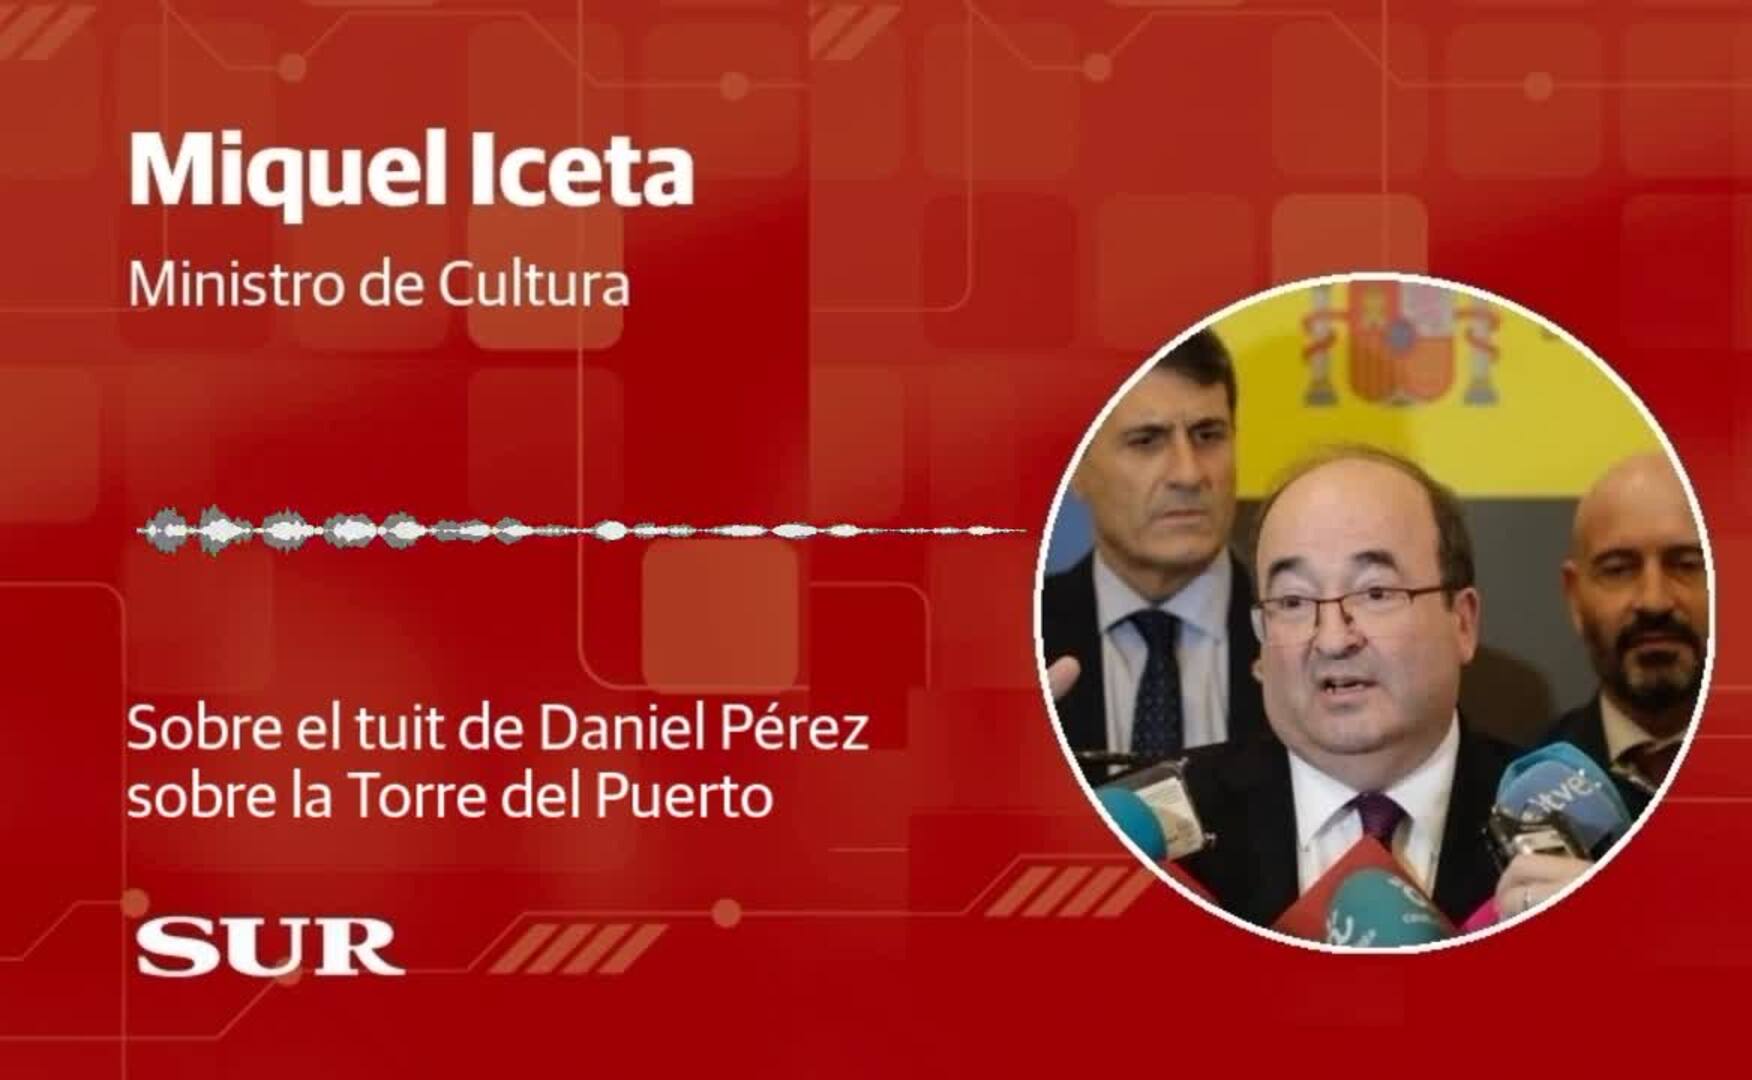 El ministro de Cultura, Miquel Iceta, habla sobre el tuit de Daniel Pérez sobre la Torre del Puerto tras afirmar que el Gobierno no se opondrá